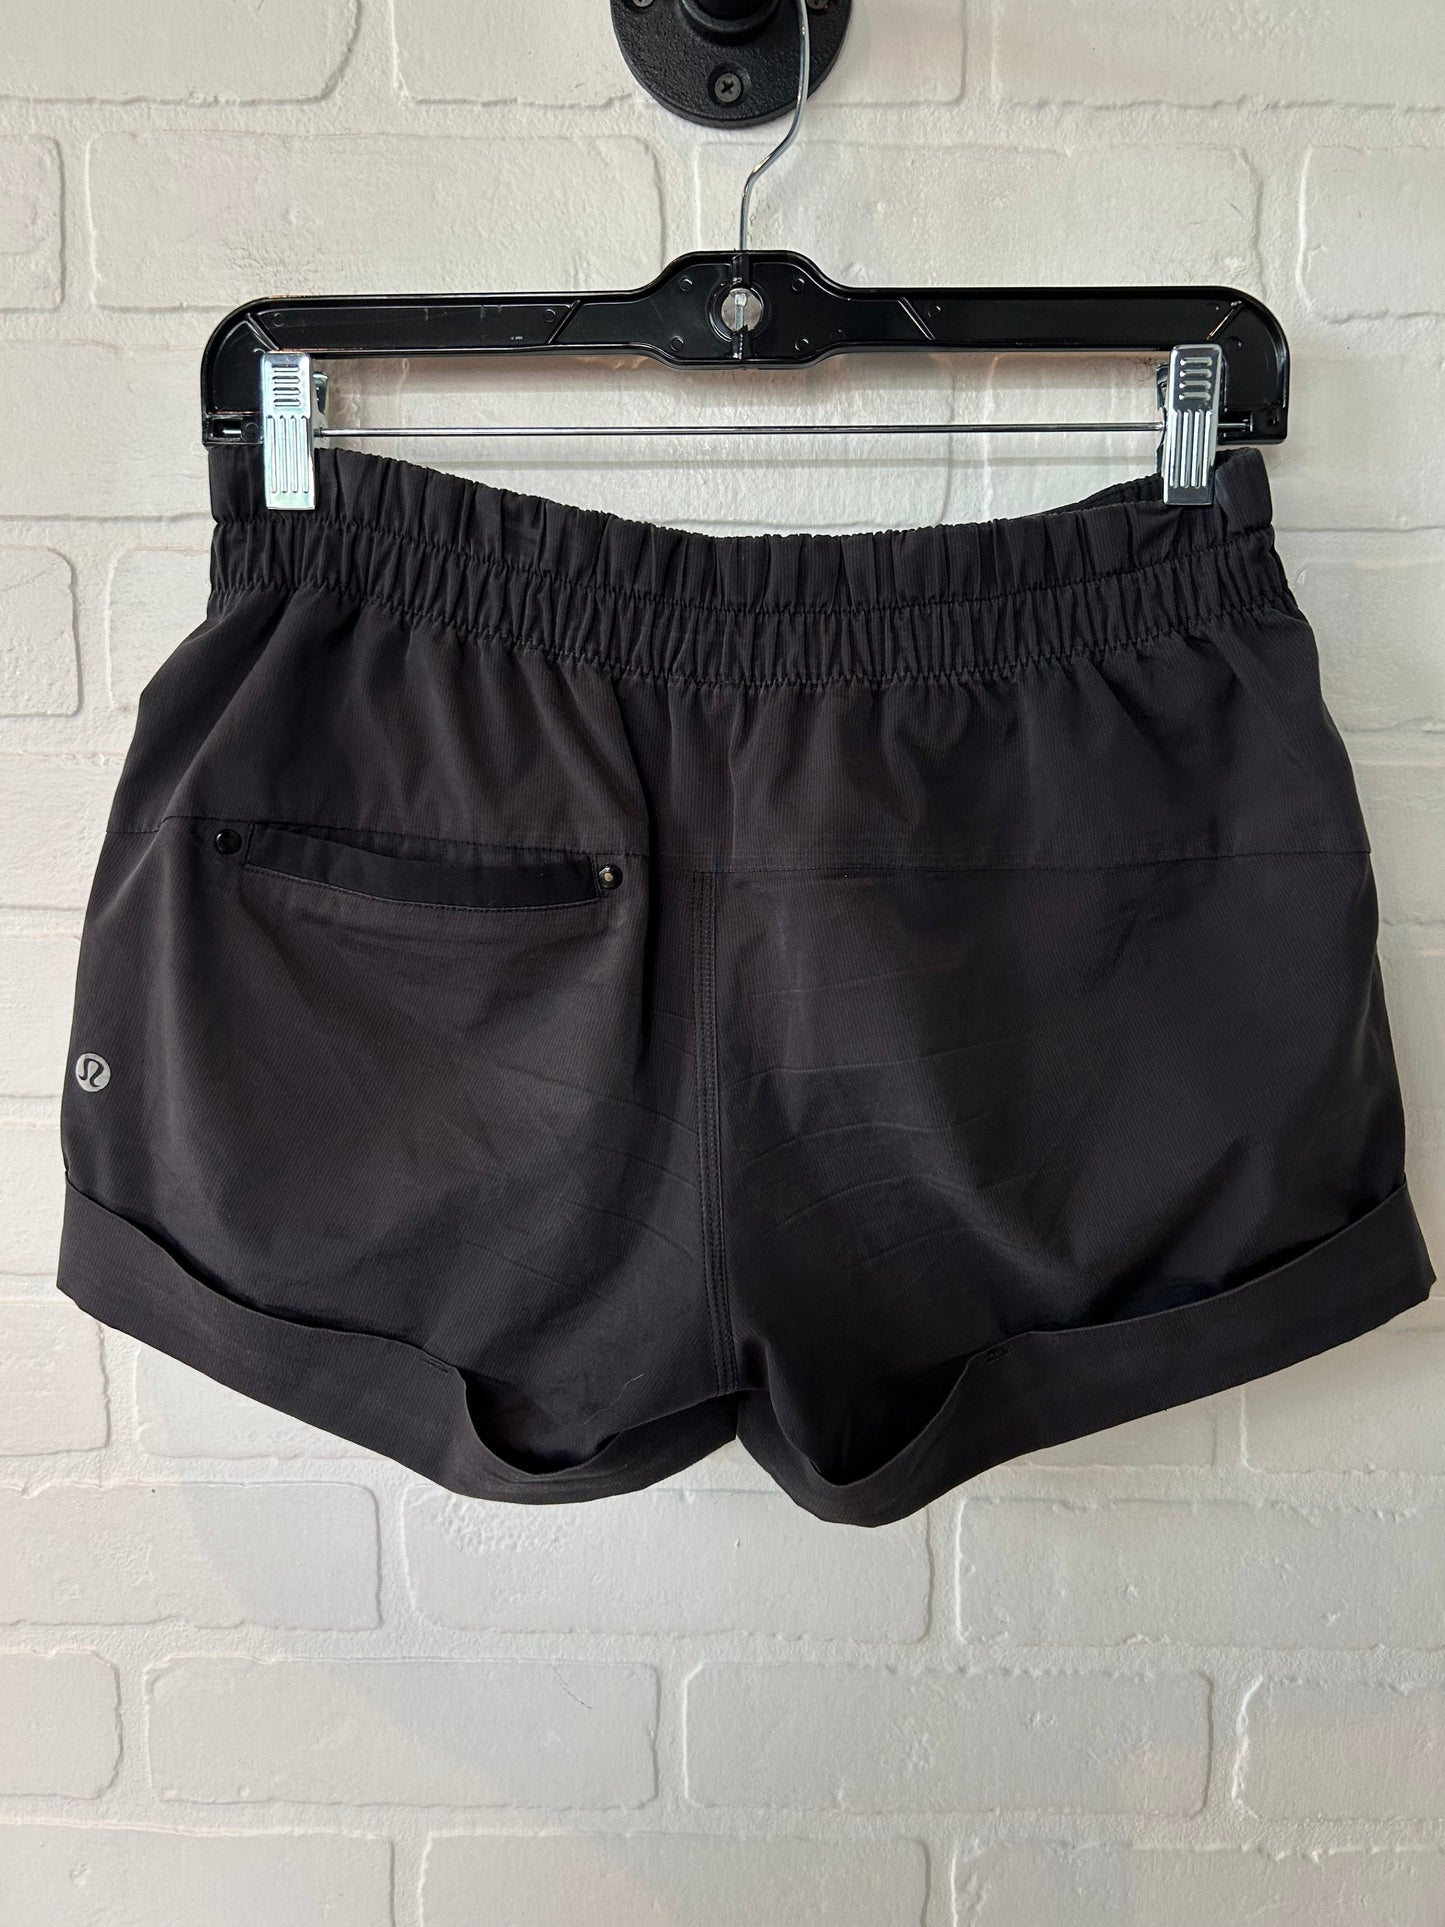 Black Athletic Shorts Lululemon, Size 4